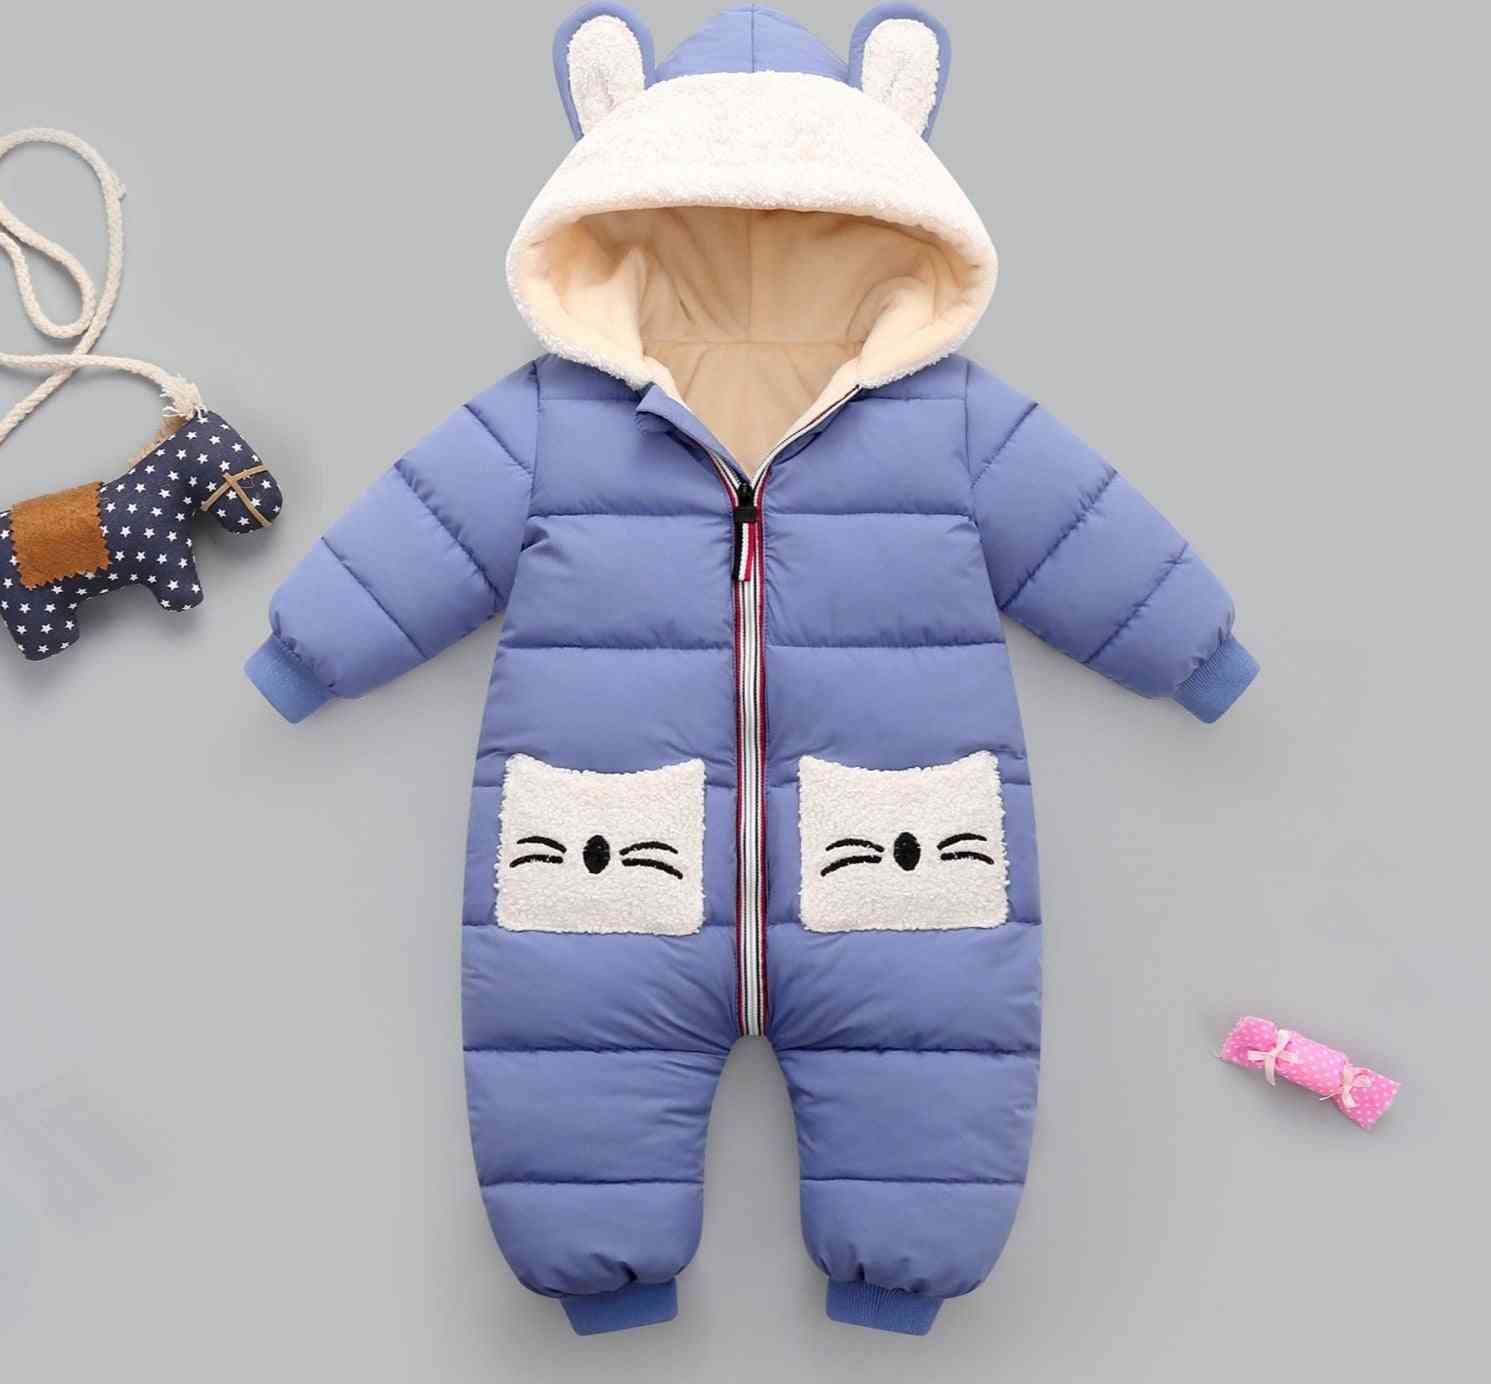 Mameluco con capucha de invierno de abrigo de bebé niña, mono grueso y cálido mono para la nieve